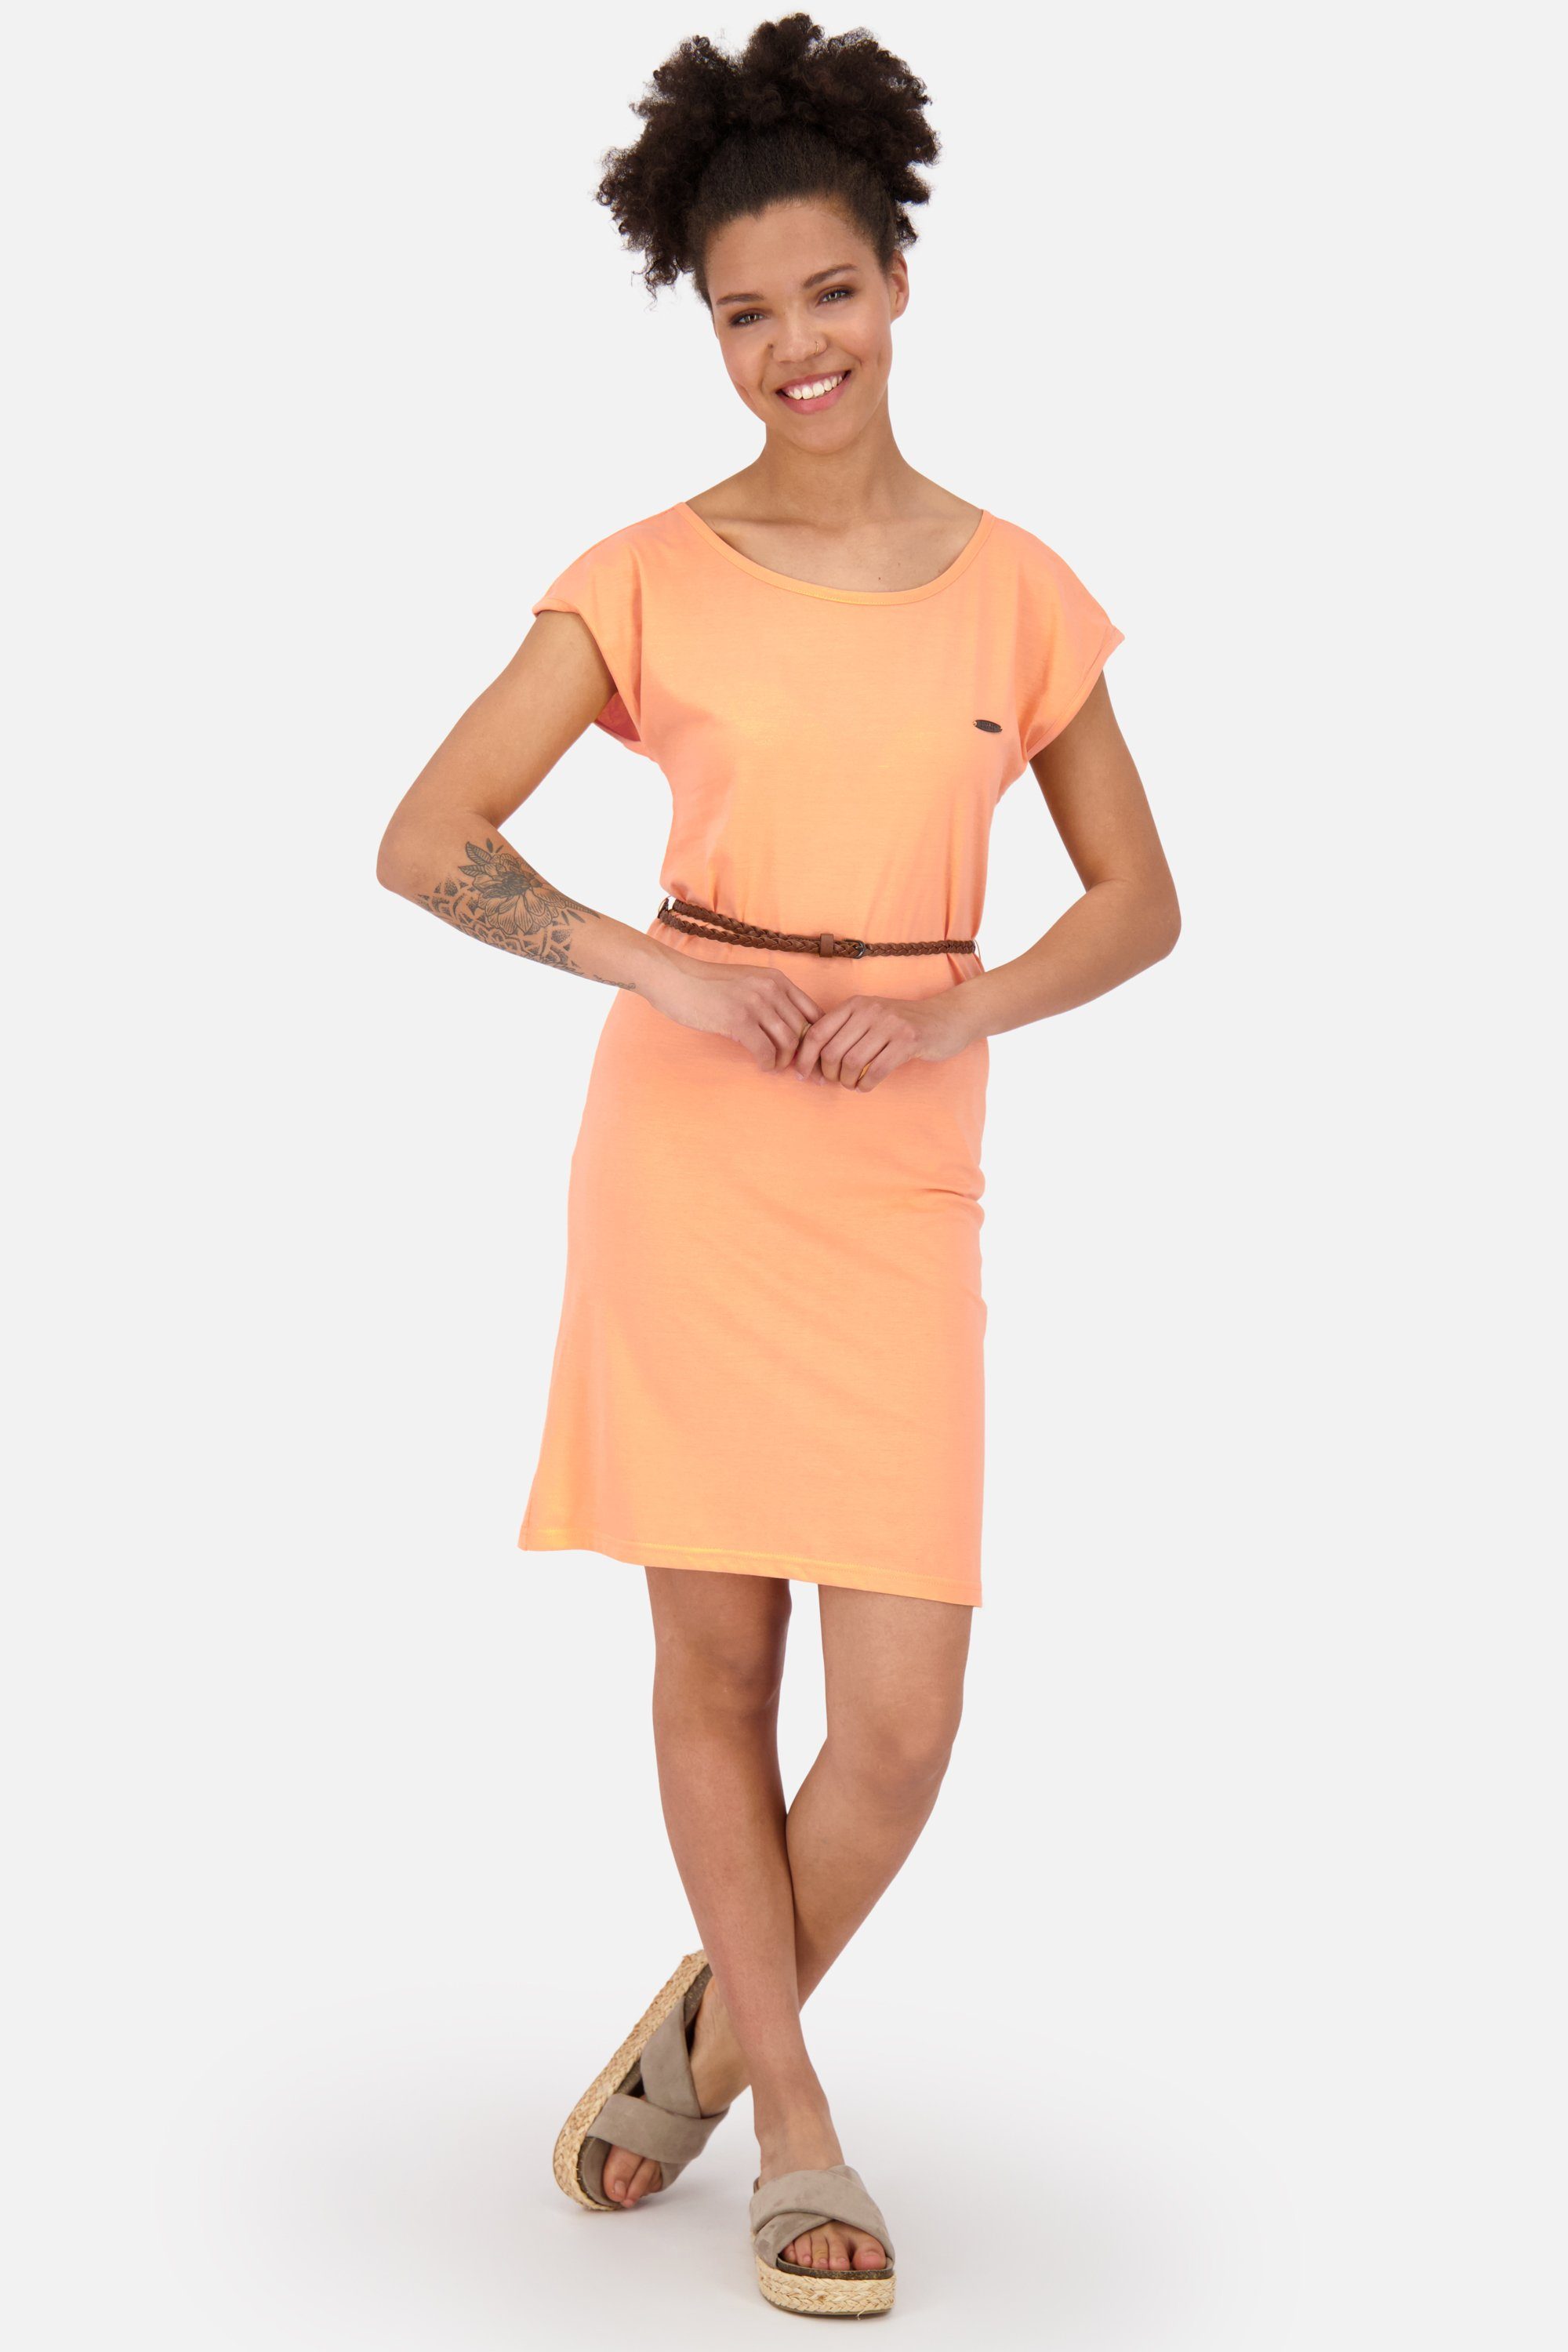 Sommerkleid Damen ElliAK A Kickin tangerine & Alife Sommerkleid, Kleid Dress Shirt melange